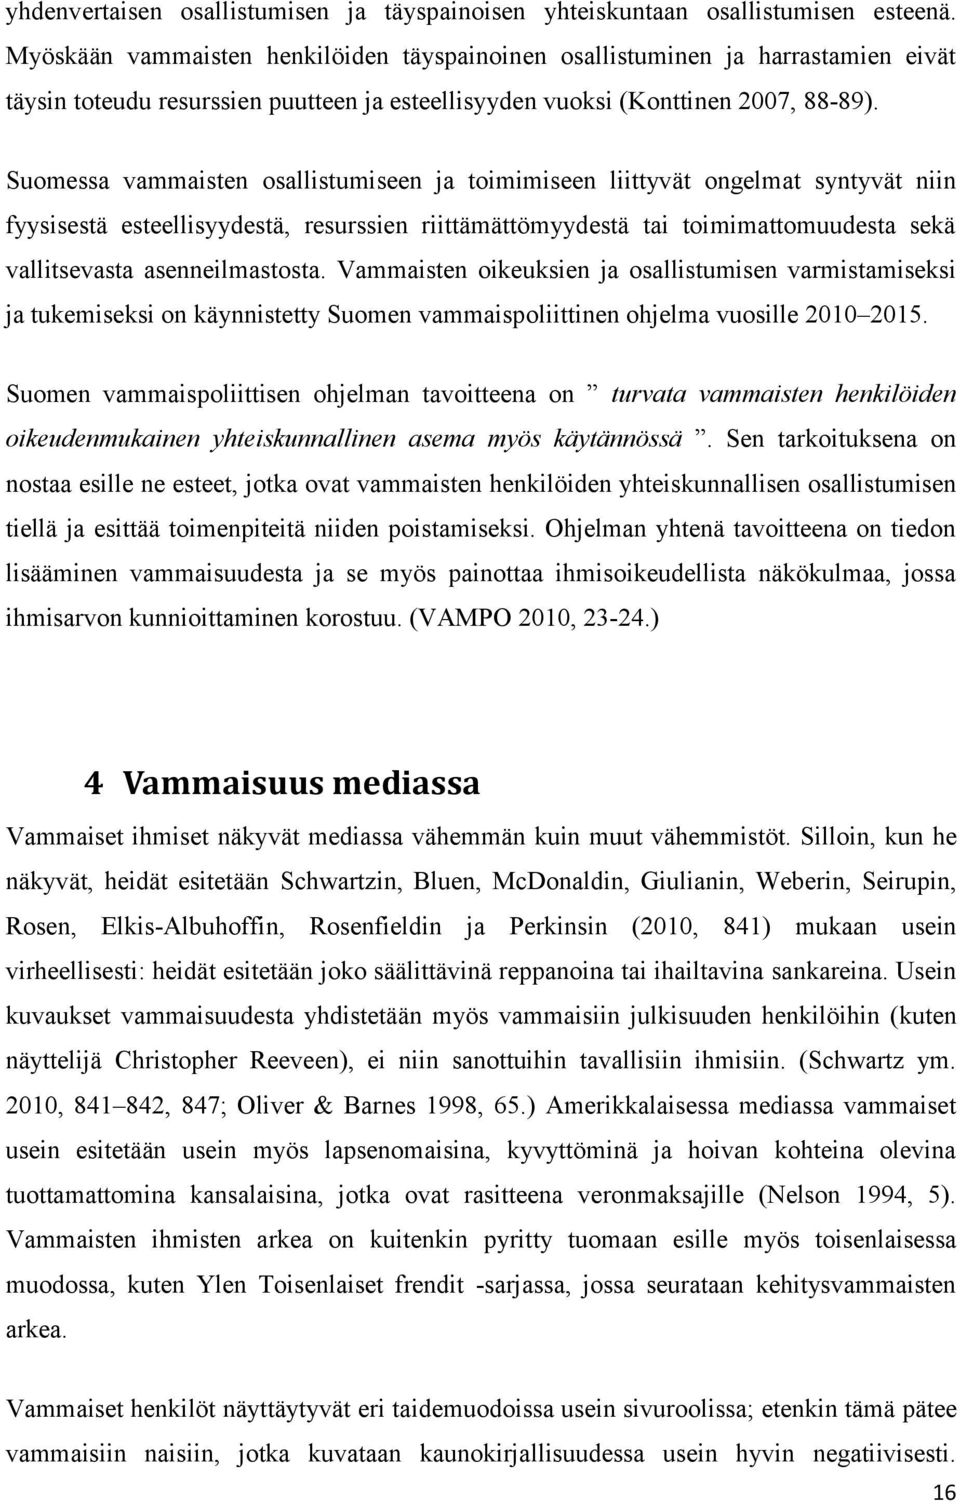 Suomessa vammaisten osallistumiseen ja toimimiseen liittyvät ongelmat syntyvät niin fyysisestä esteellisyydestä, resurssien riittämättömyydestä tai toimimattomuudesta sekä vallitsevasta